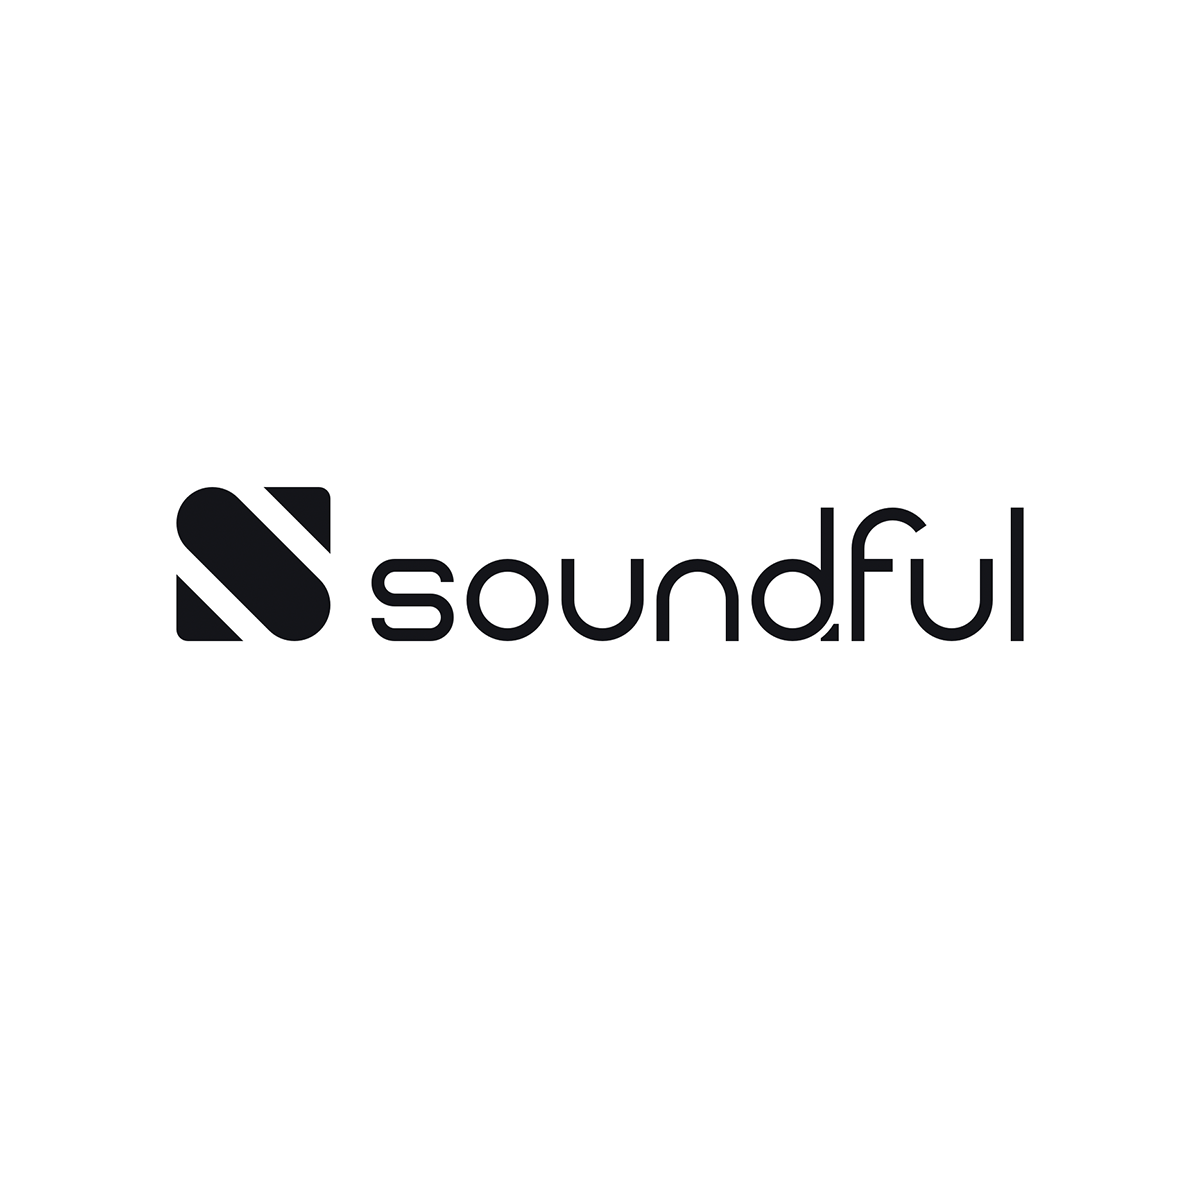 United States : L’ agence smartboost a aidé Soundful à développer son activité grâce au SEO et au marketing numérique